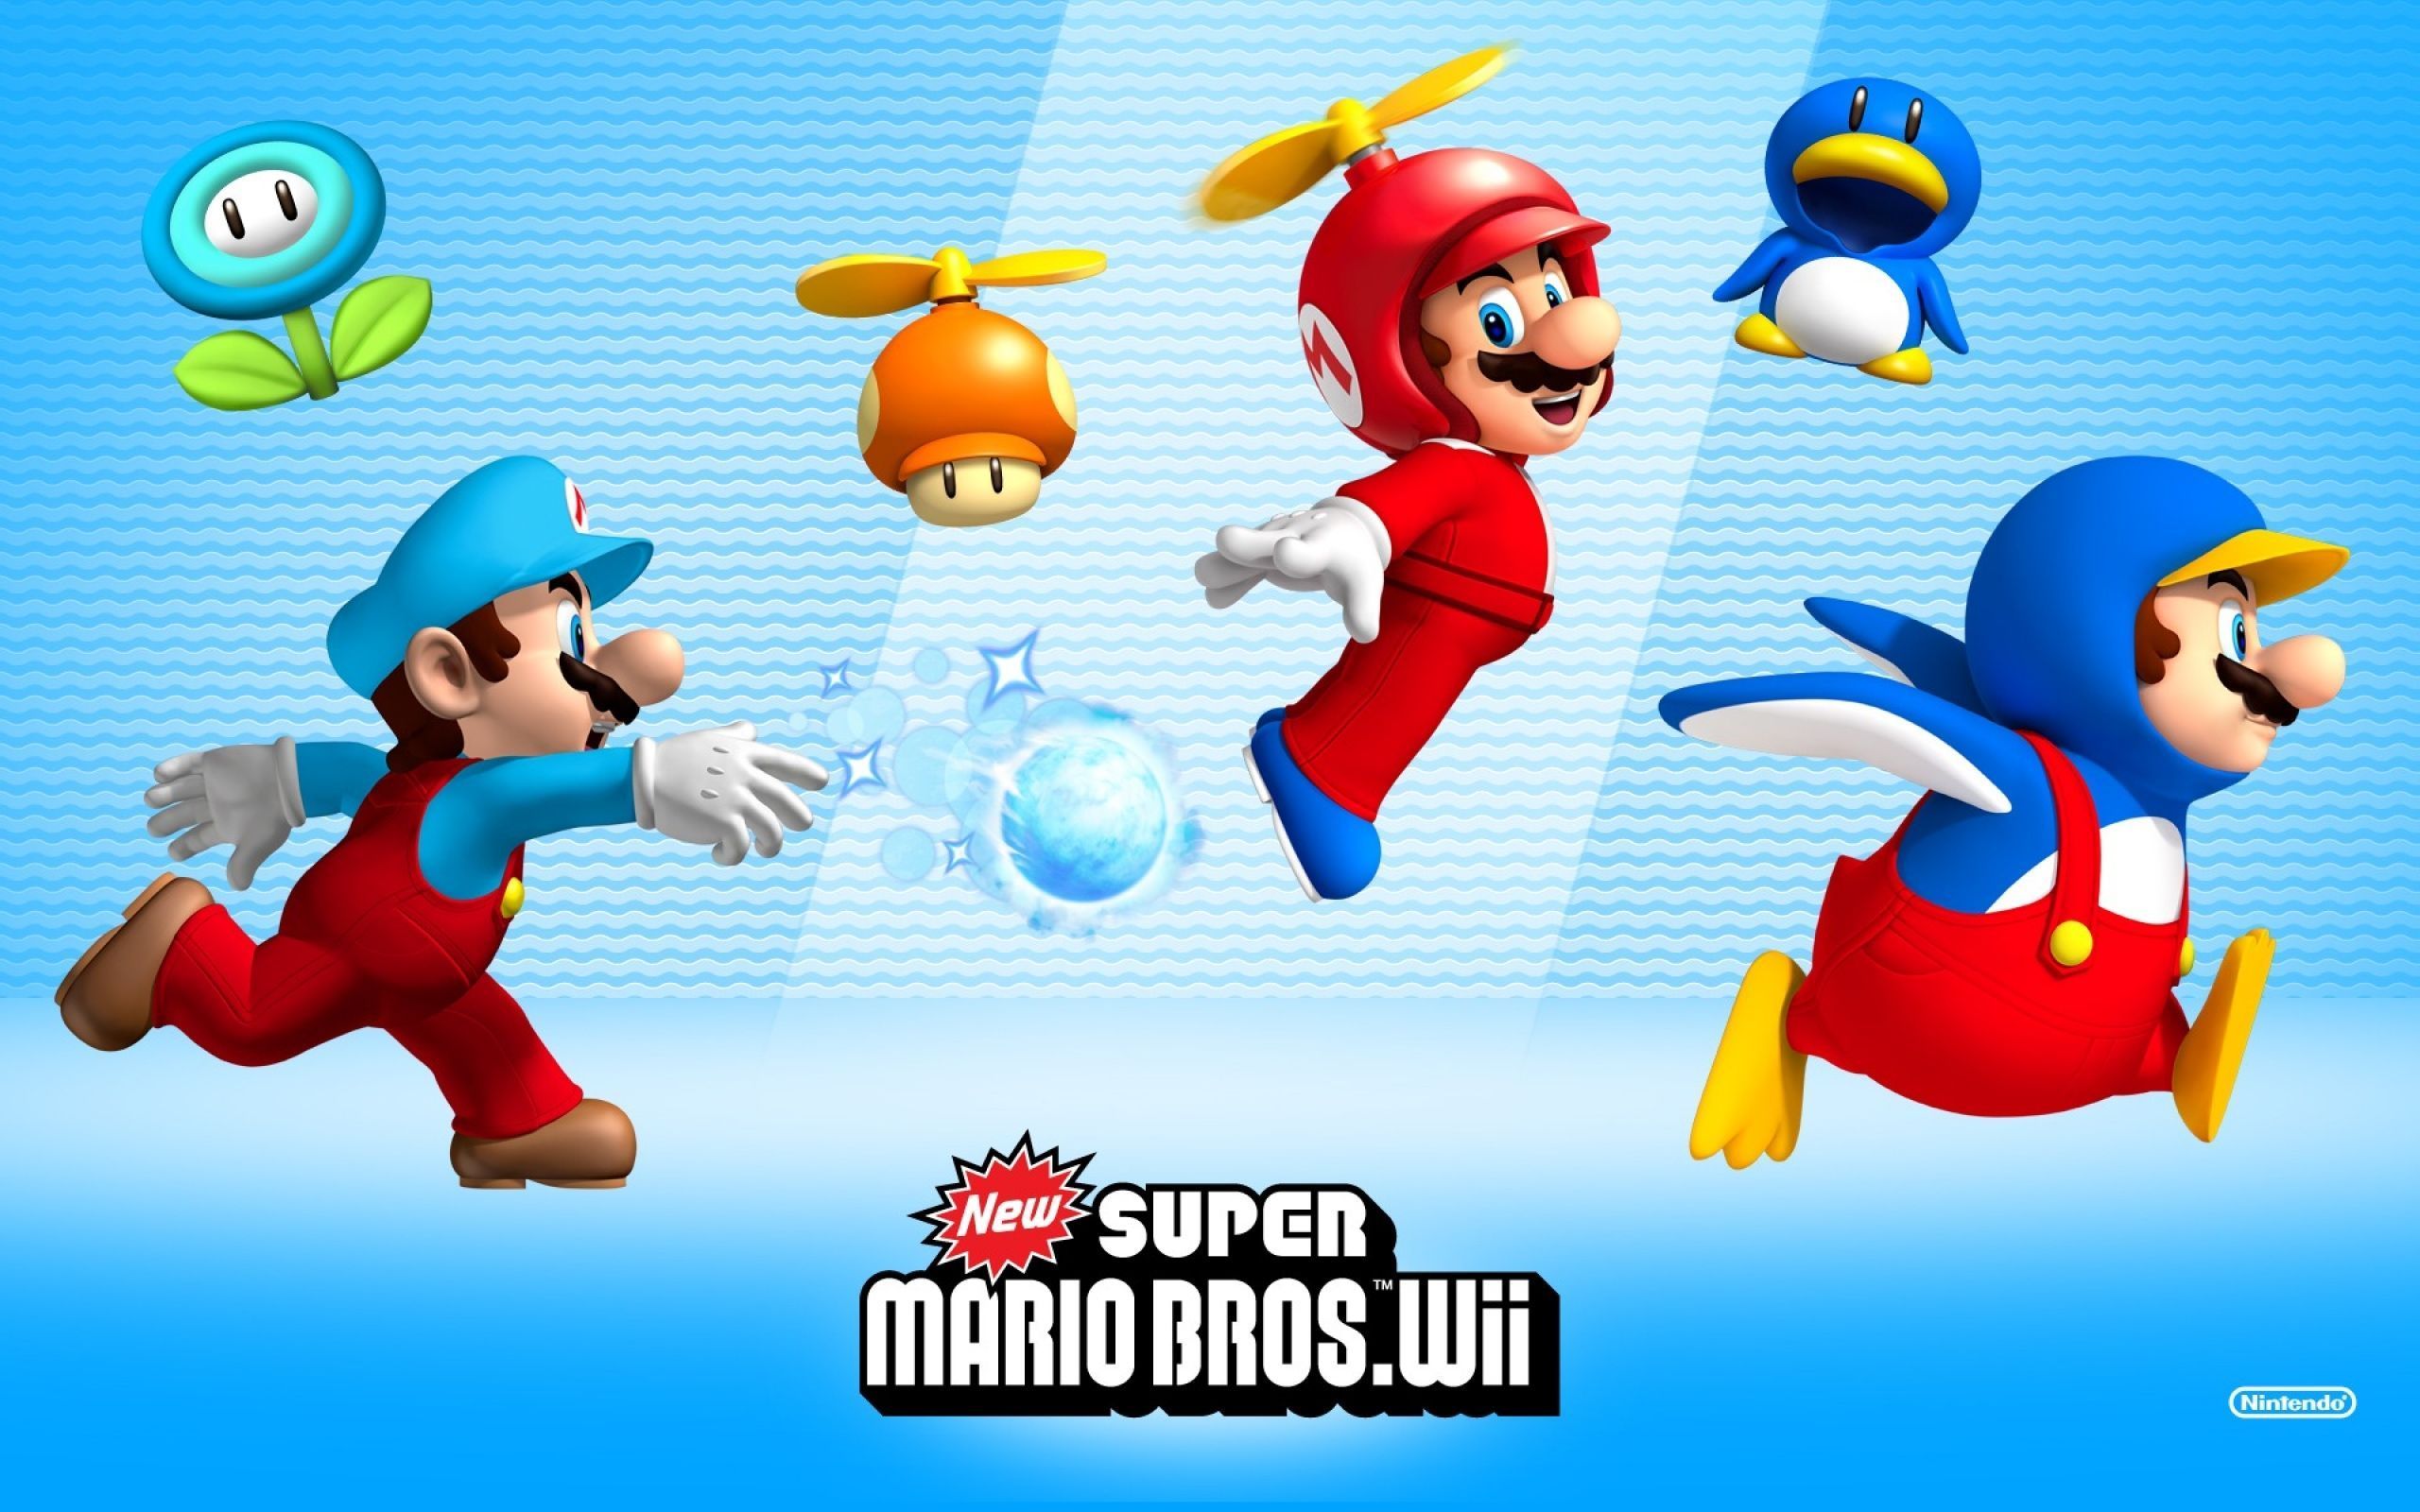 2560x1600 New Super Mario Bros. Wii desktop PC and Mac wallpaper